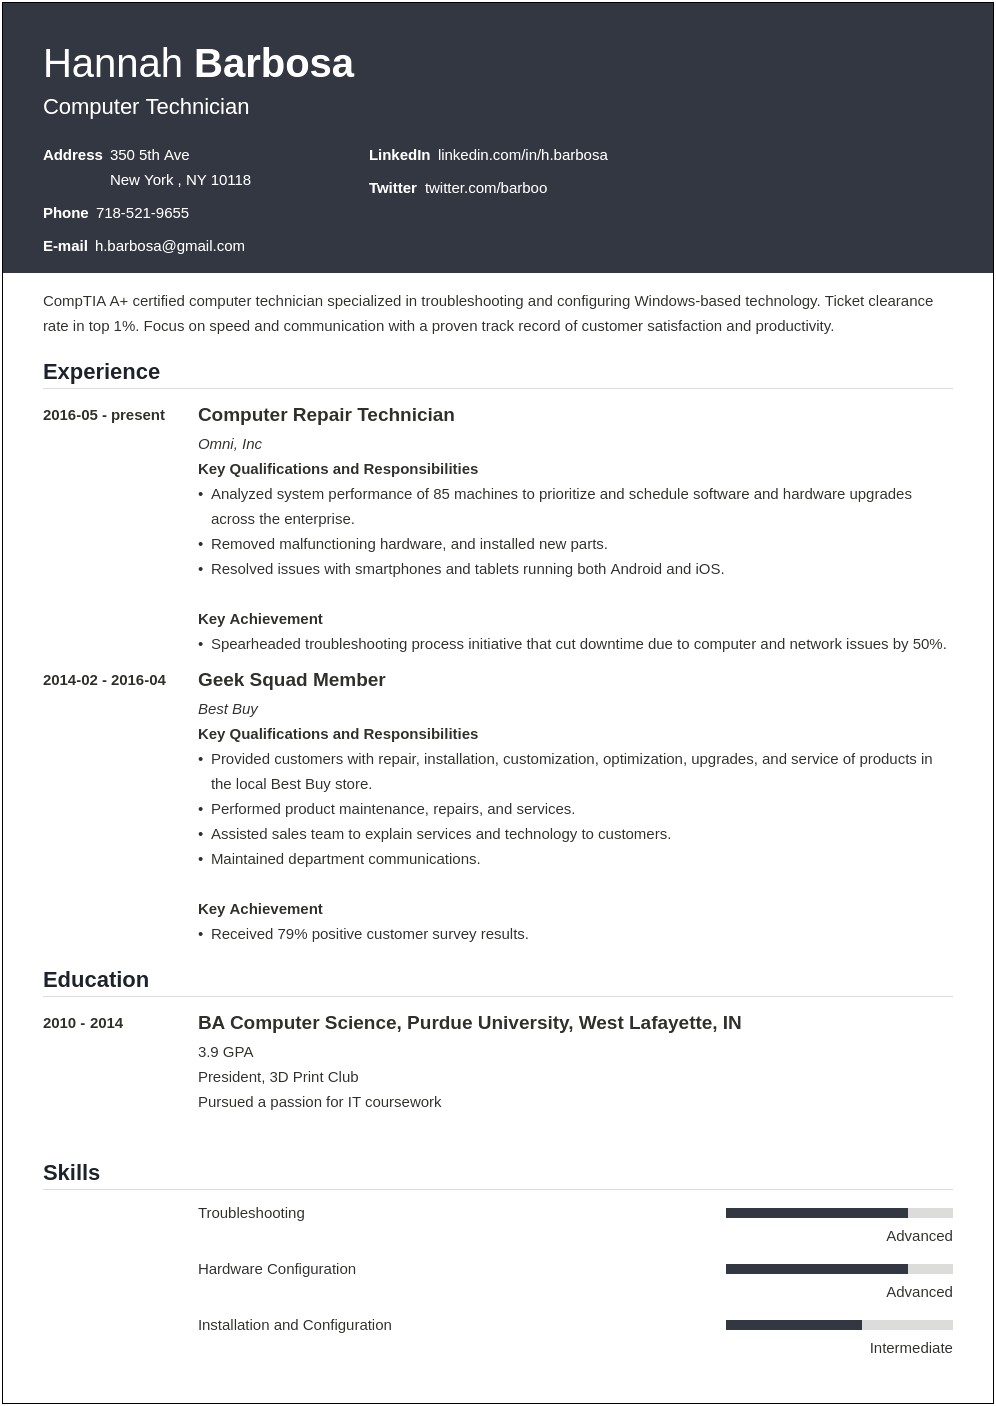 Computer Repair Technician Job Description Resume